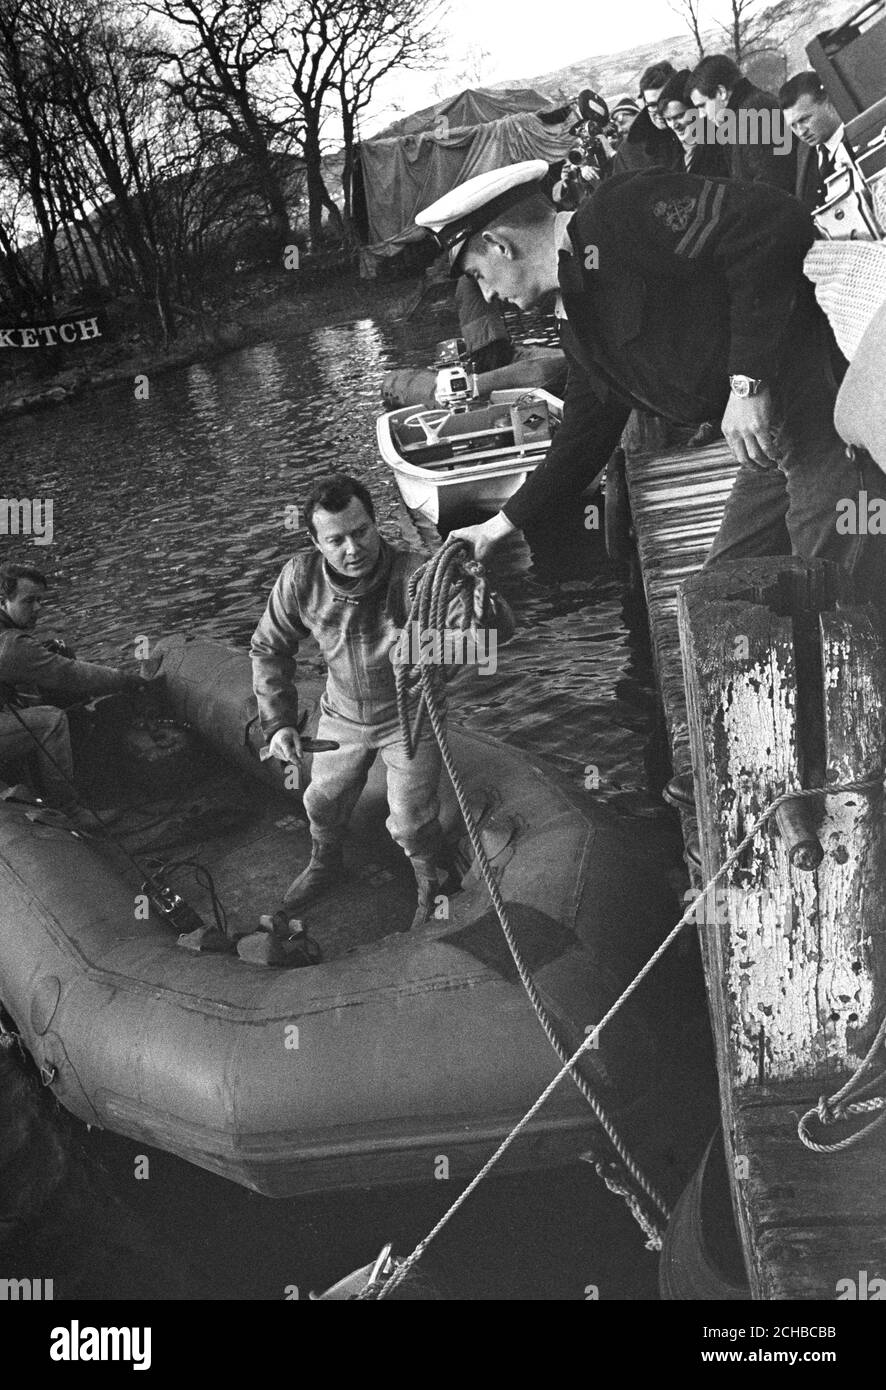 Taucher der Royal Navy machen sich in einem aufblasbaren Schlauchboot auf die Suche nach dem Wrack von Bluebird und Donald Campbells Körper. Das Jetboot stürzte gestern bei einem Versuch auf den Weltrekord im Wasser ab. Stockfoto